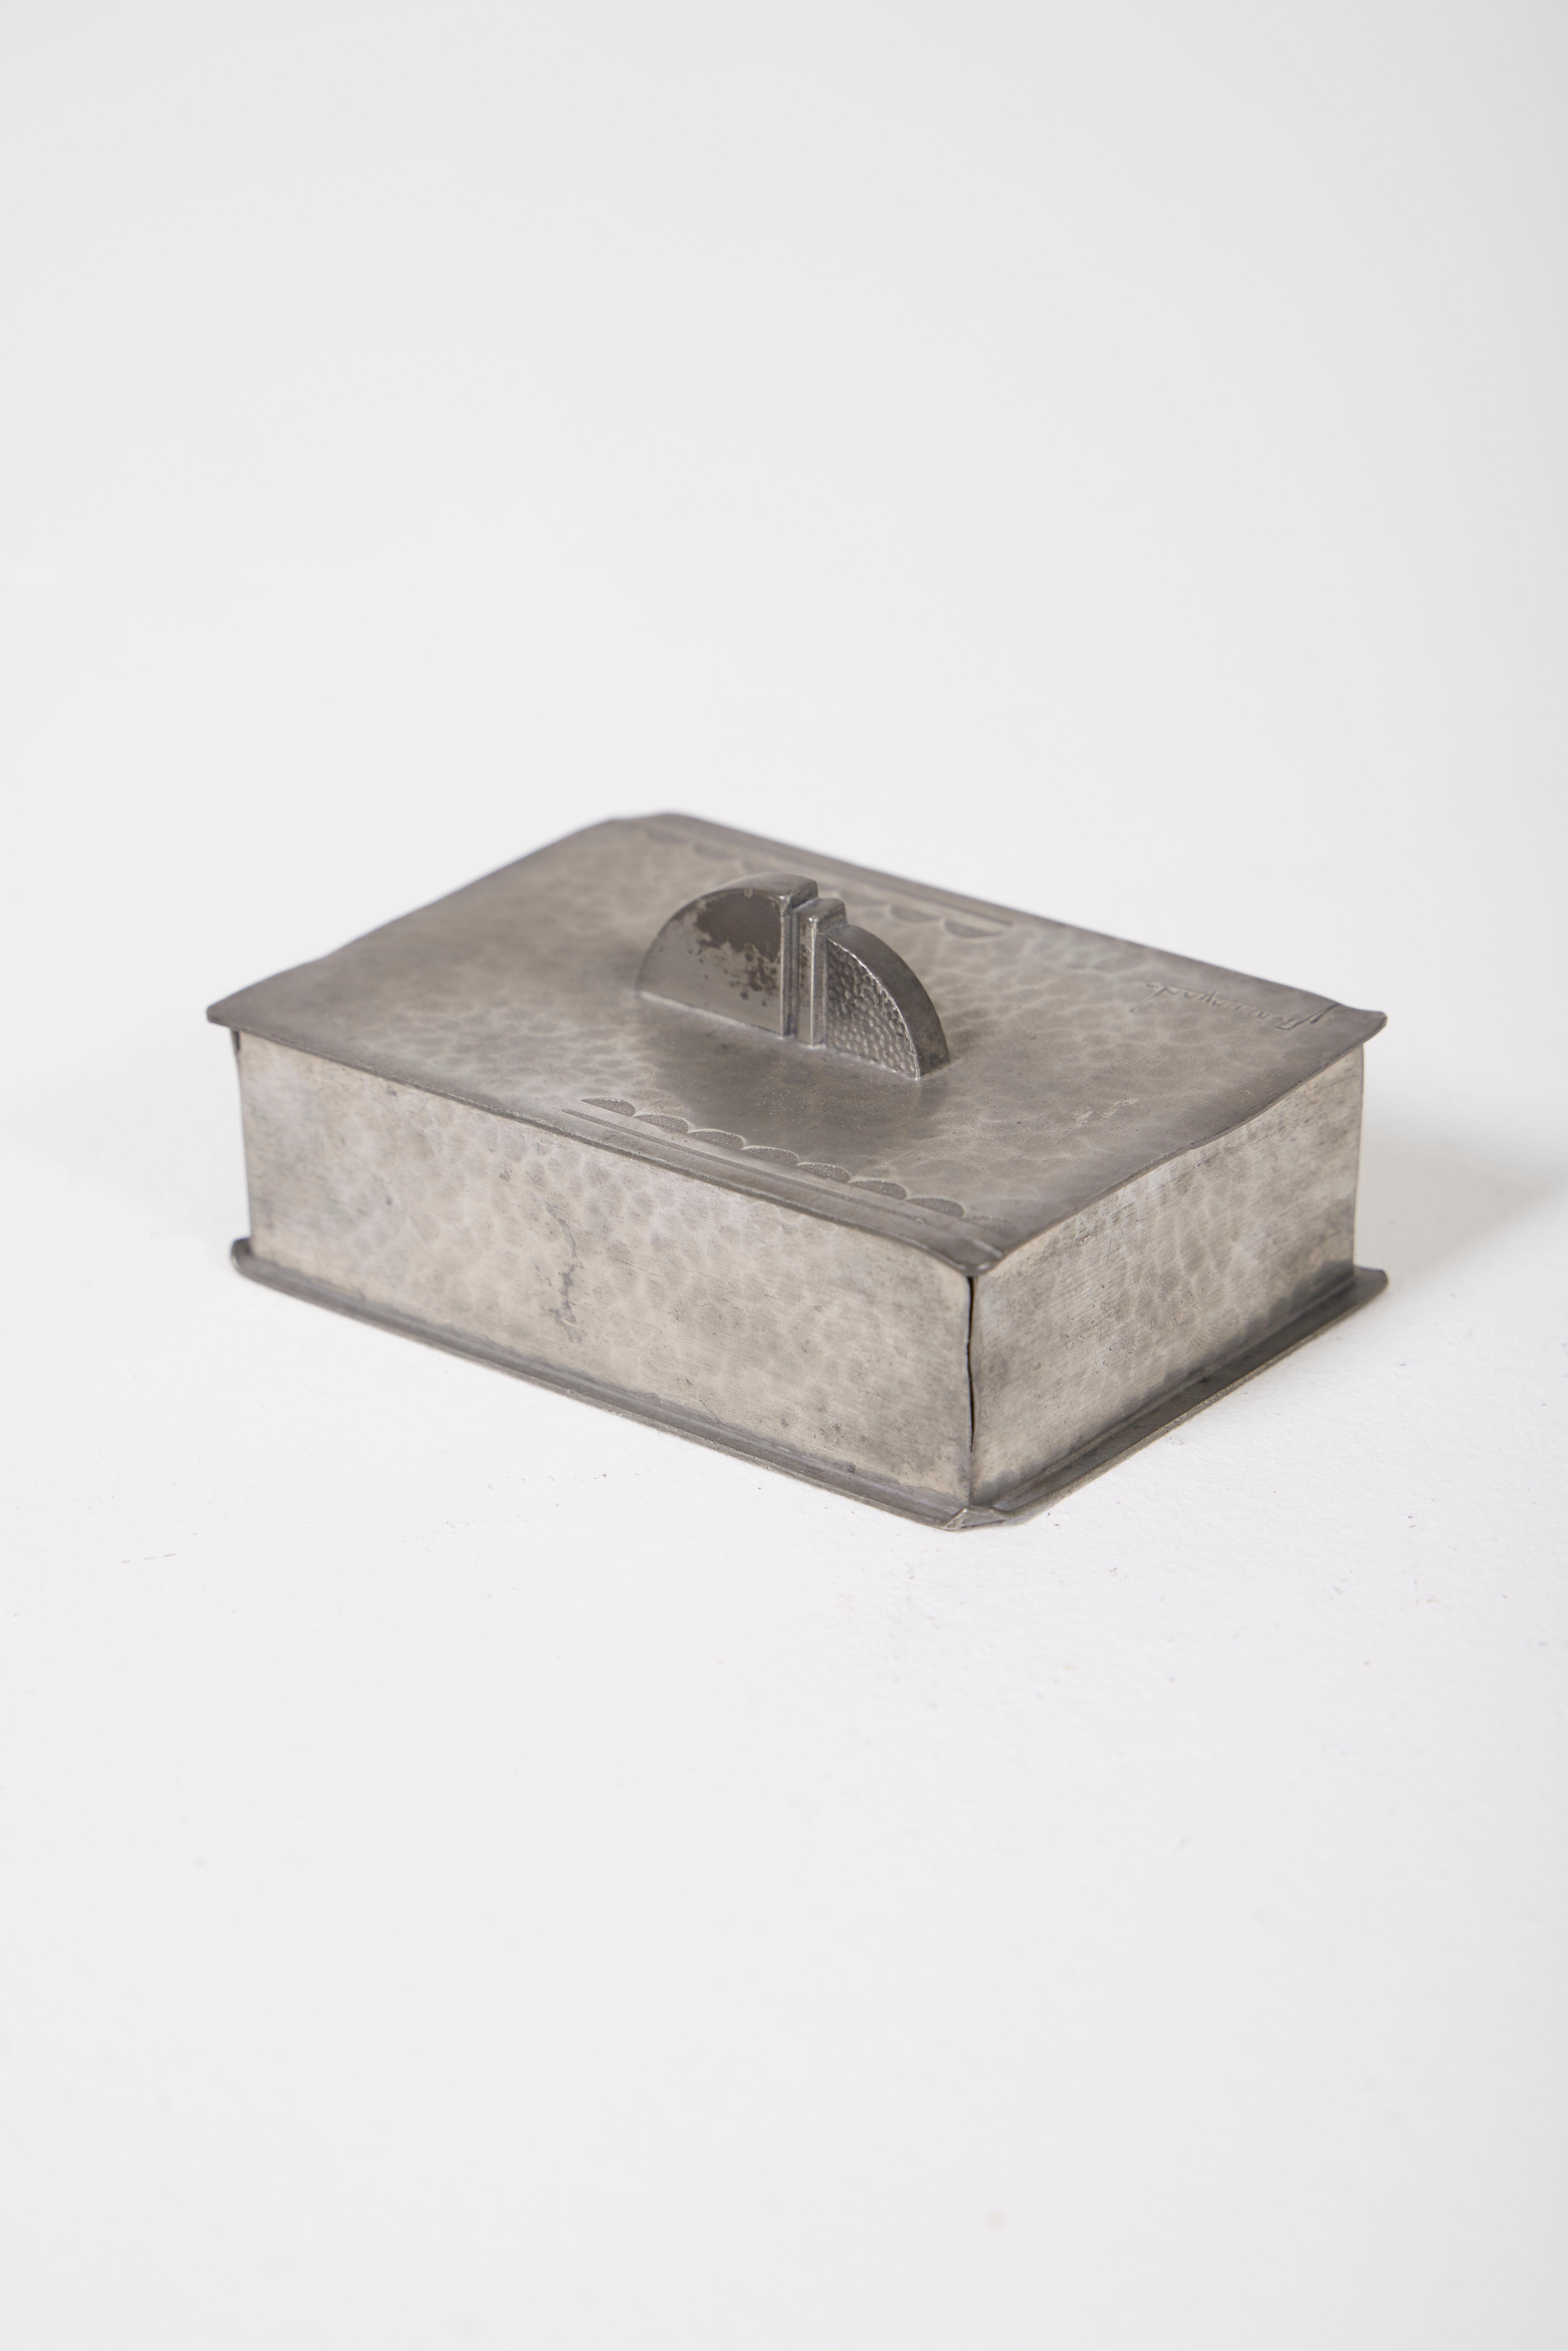 Tin box by designer René Delavan, 1930s. In very good condition.
LP1768